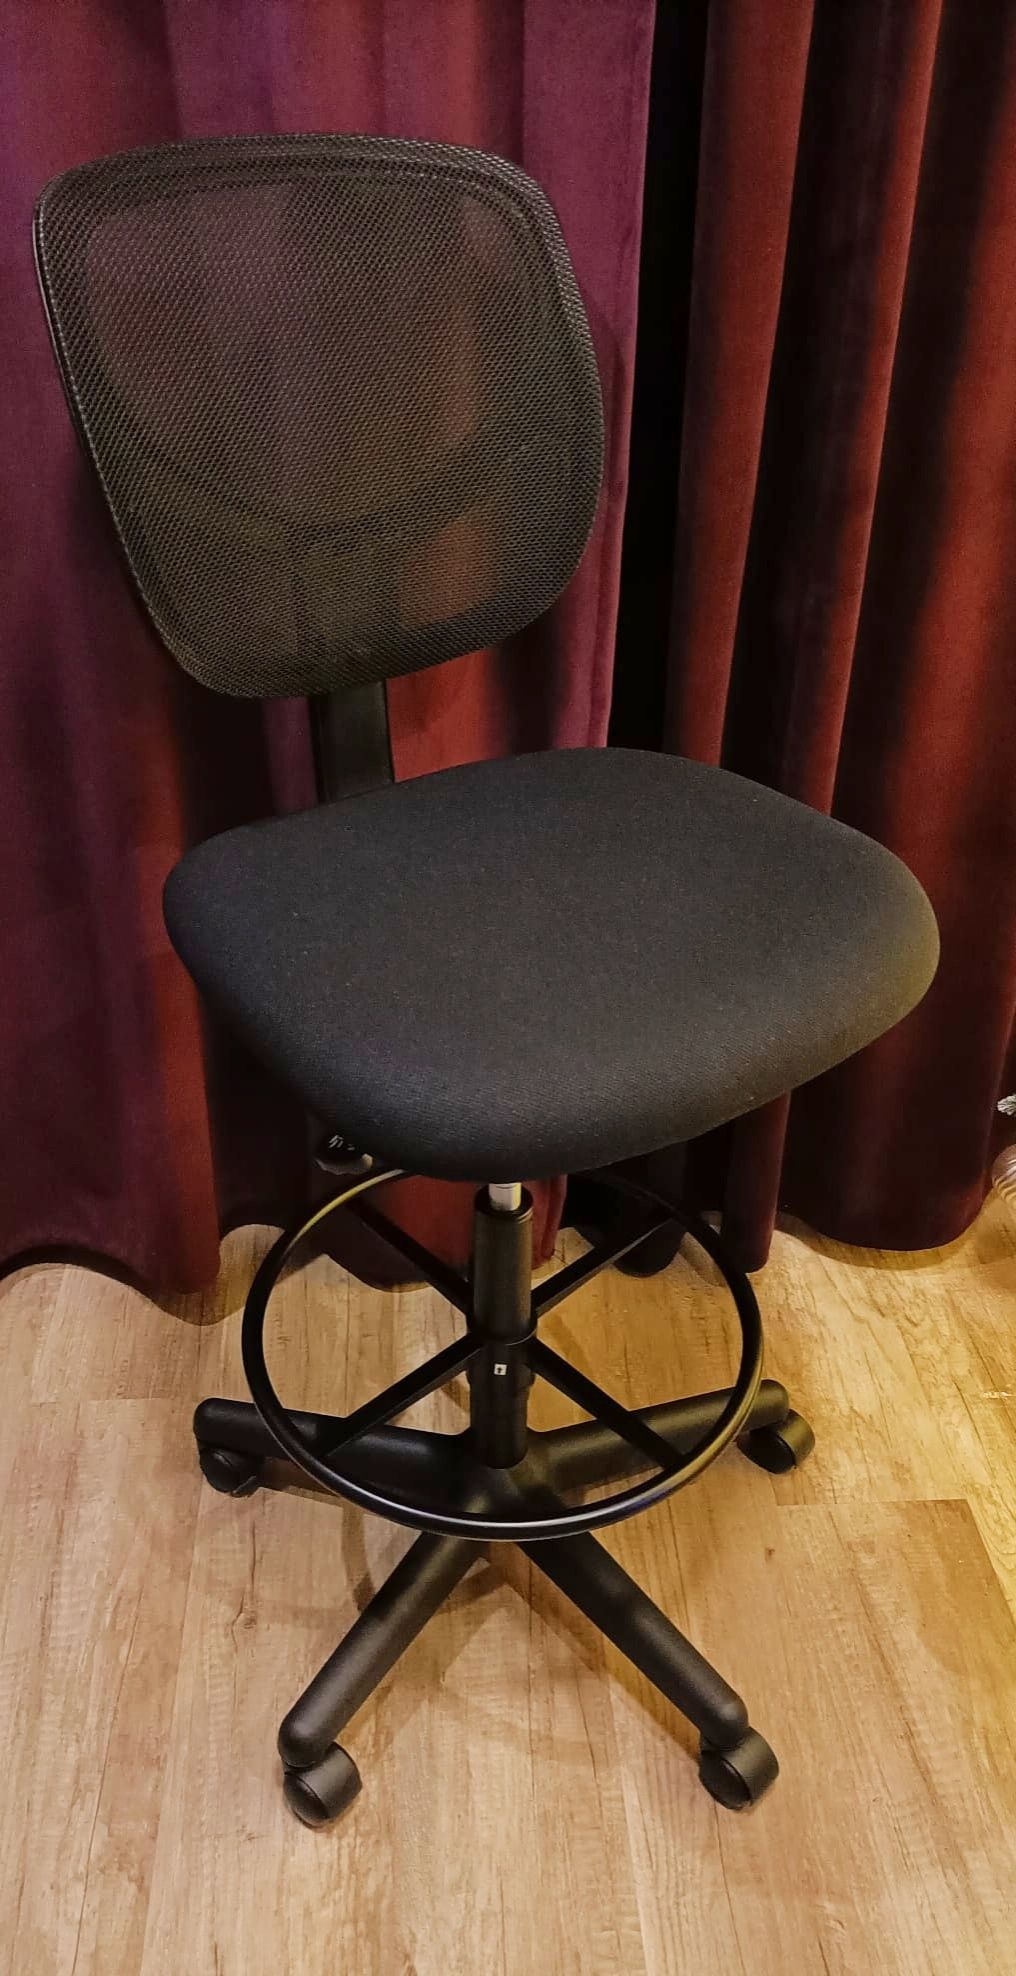 Fotel/ hoker/krzesło na kółkach biurowy